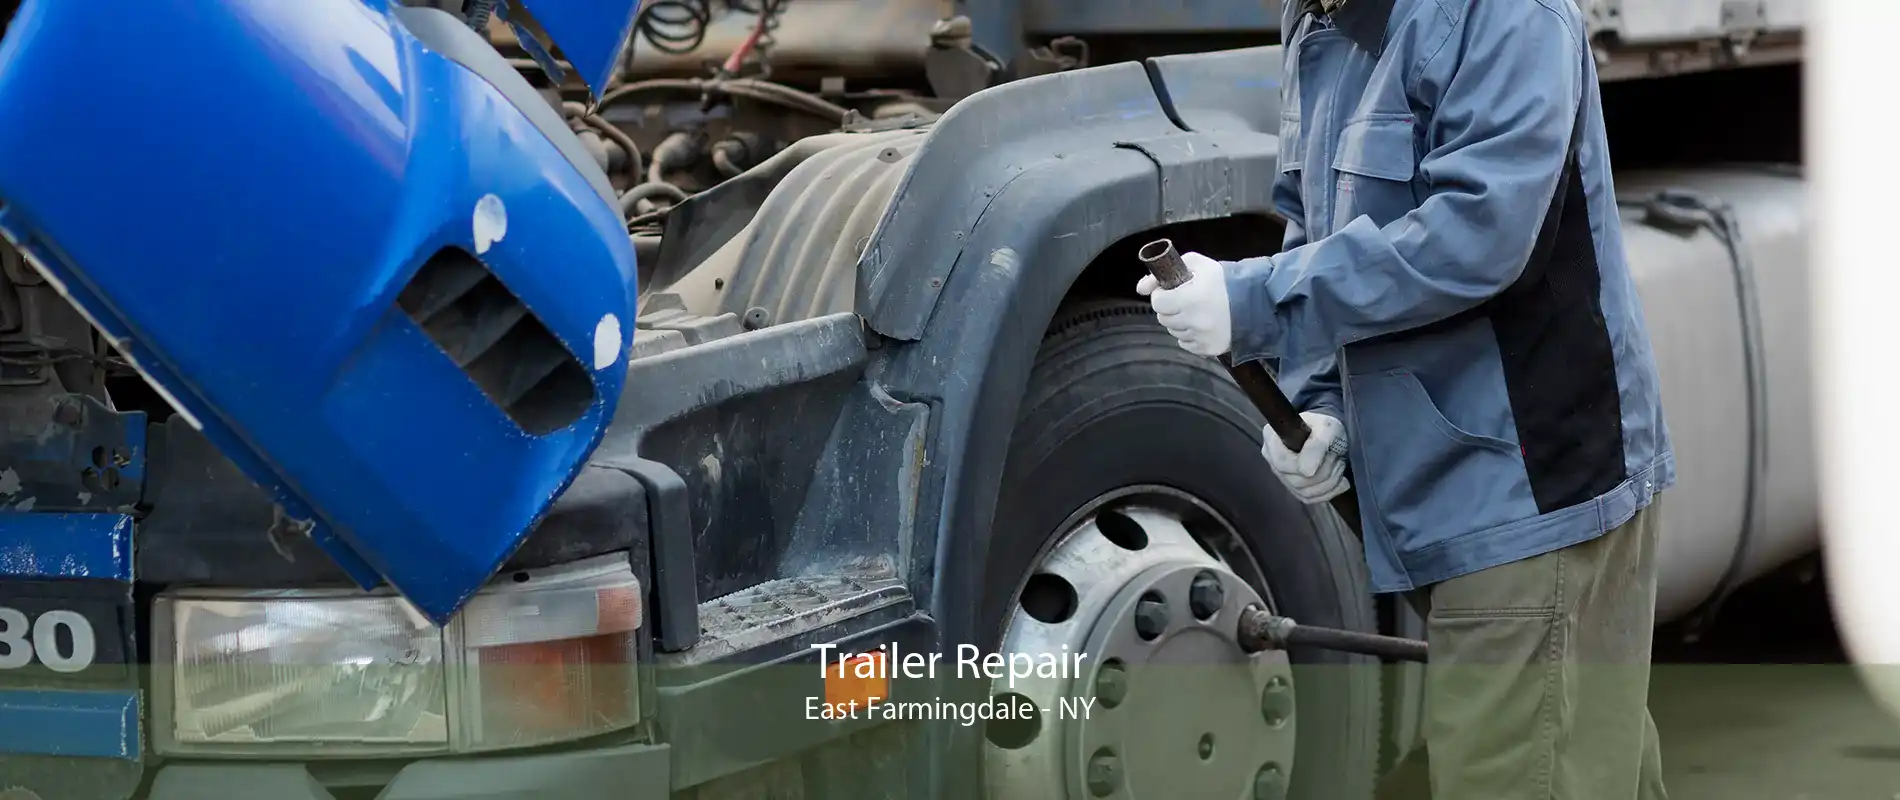 Trailer Repair East Farmingdale - NY